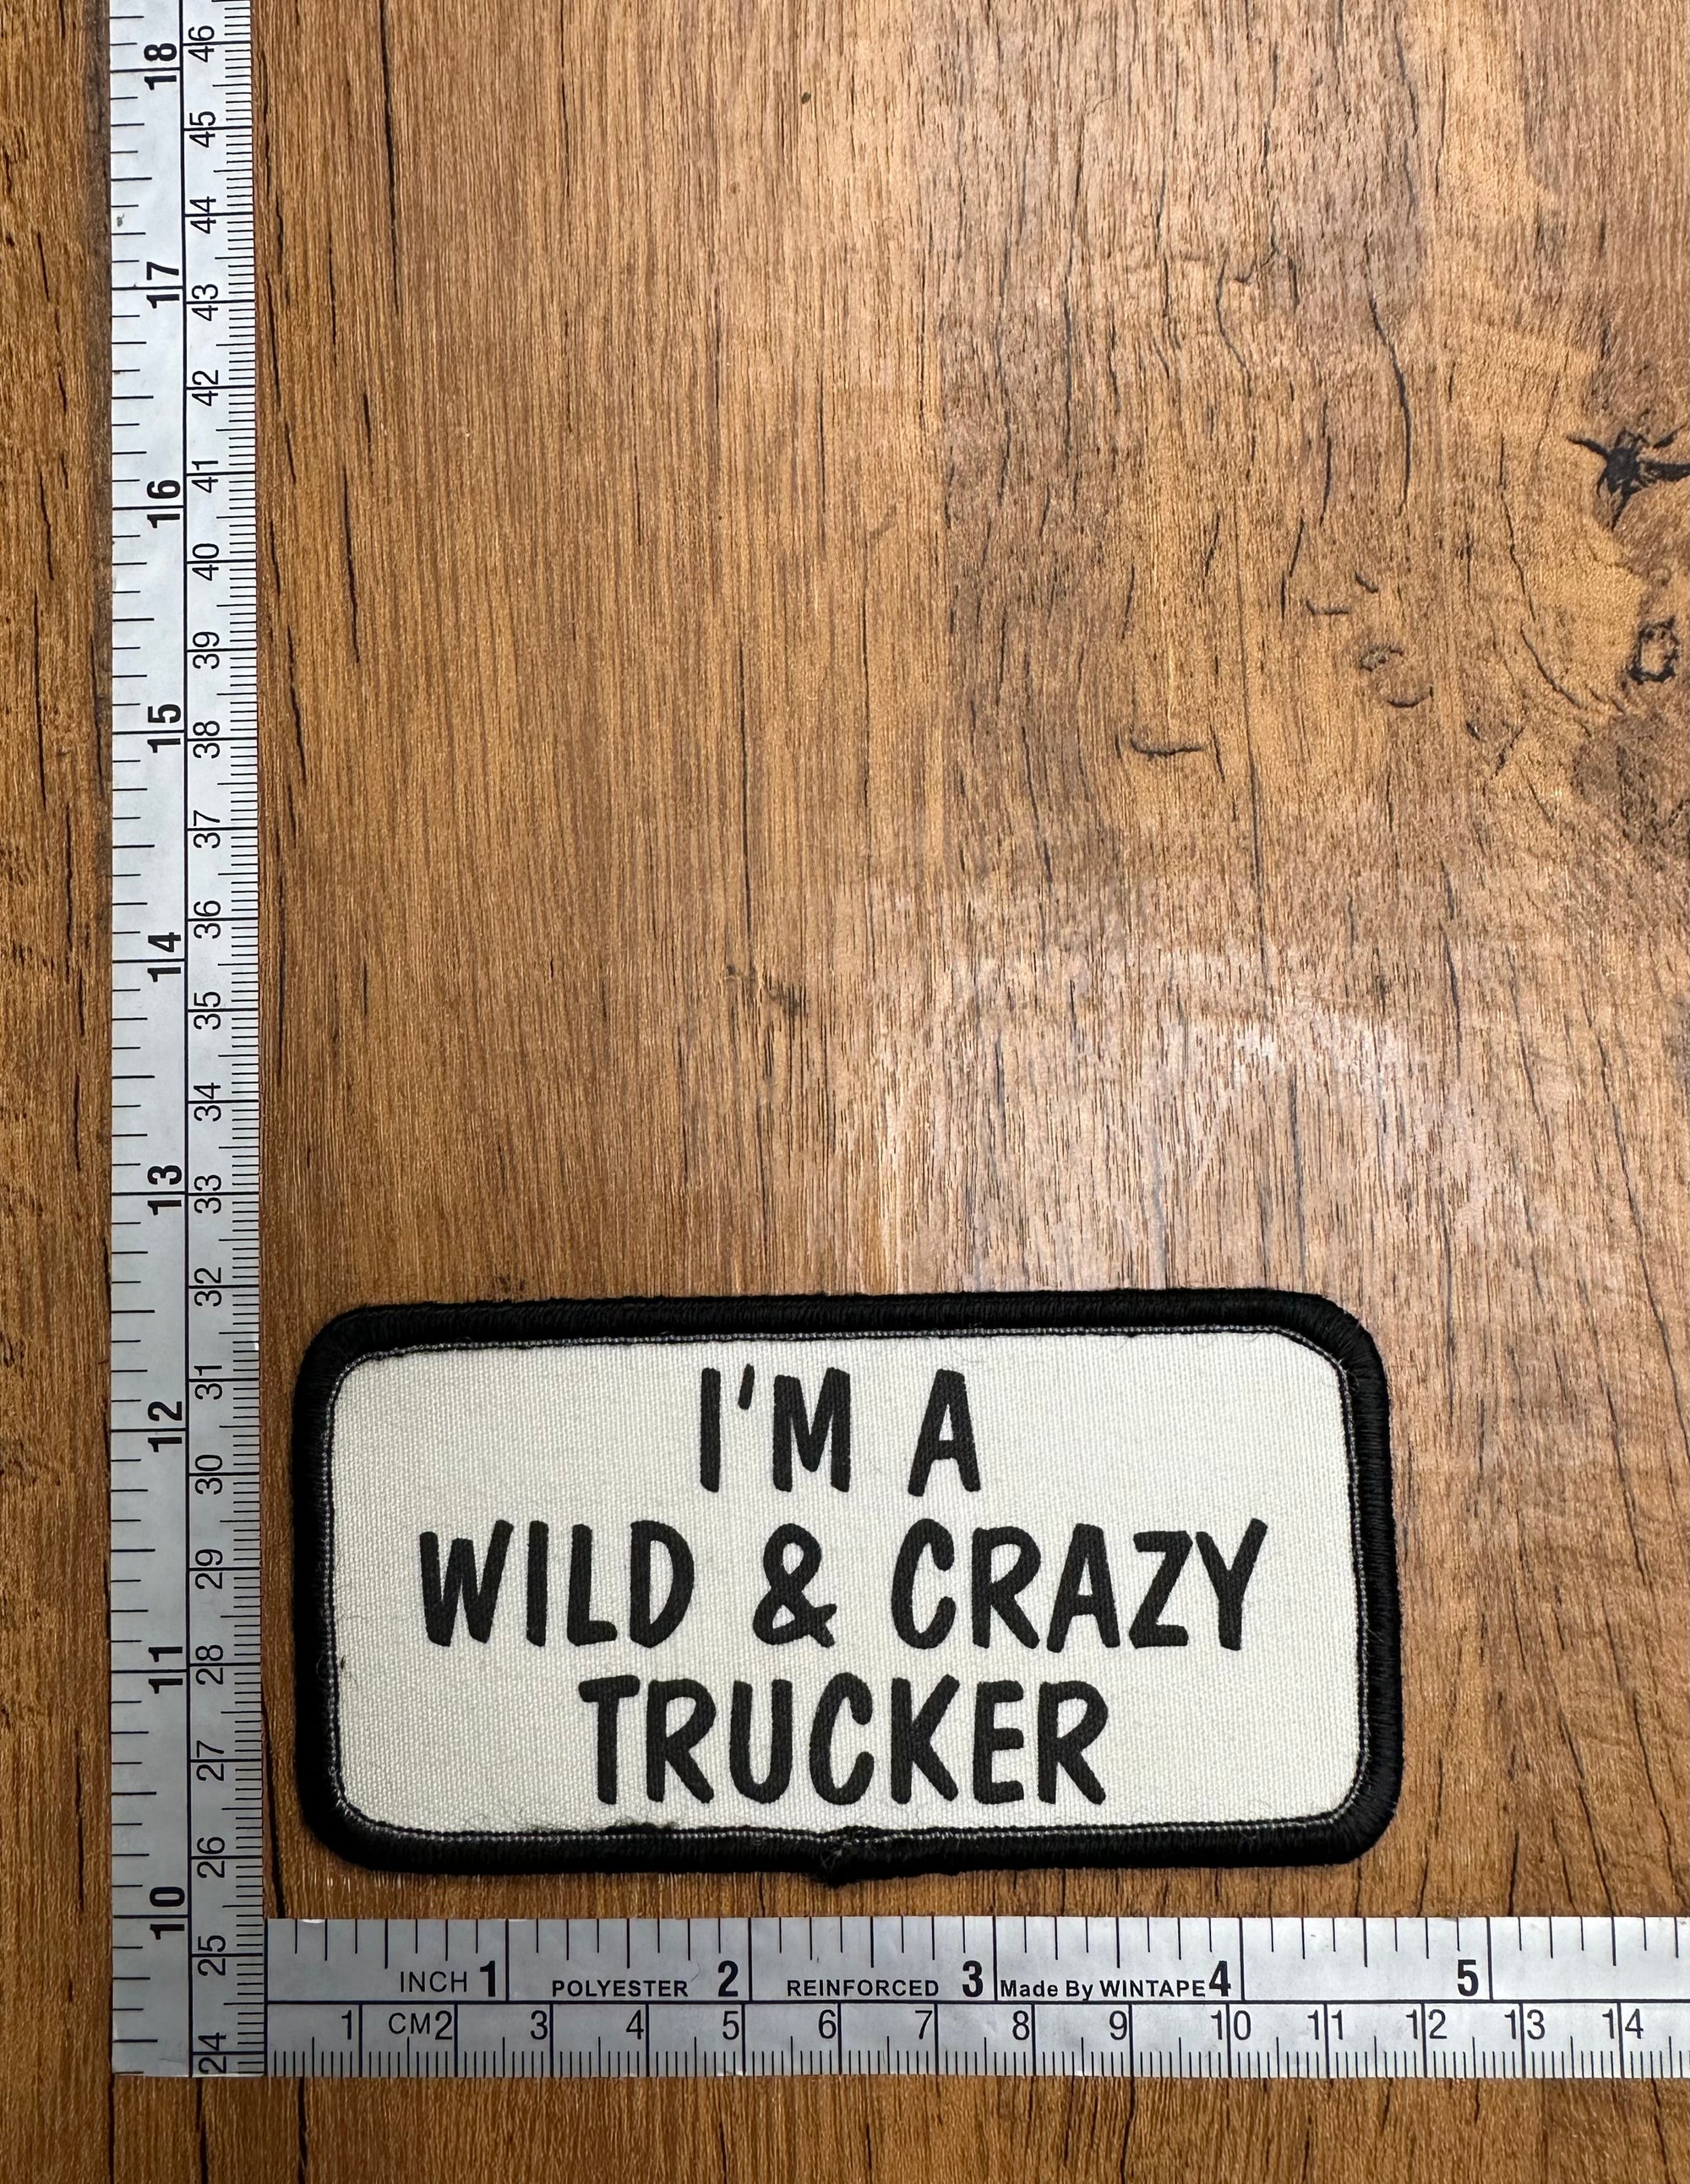 I’m a wild & crazy trucker